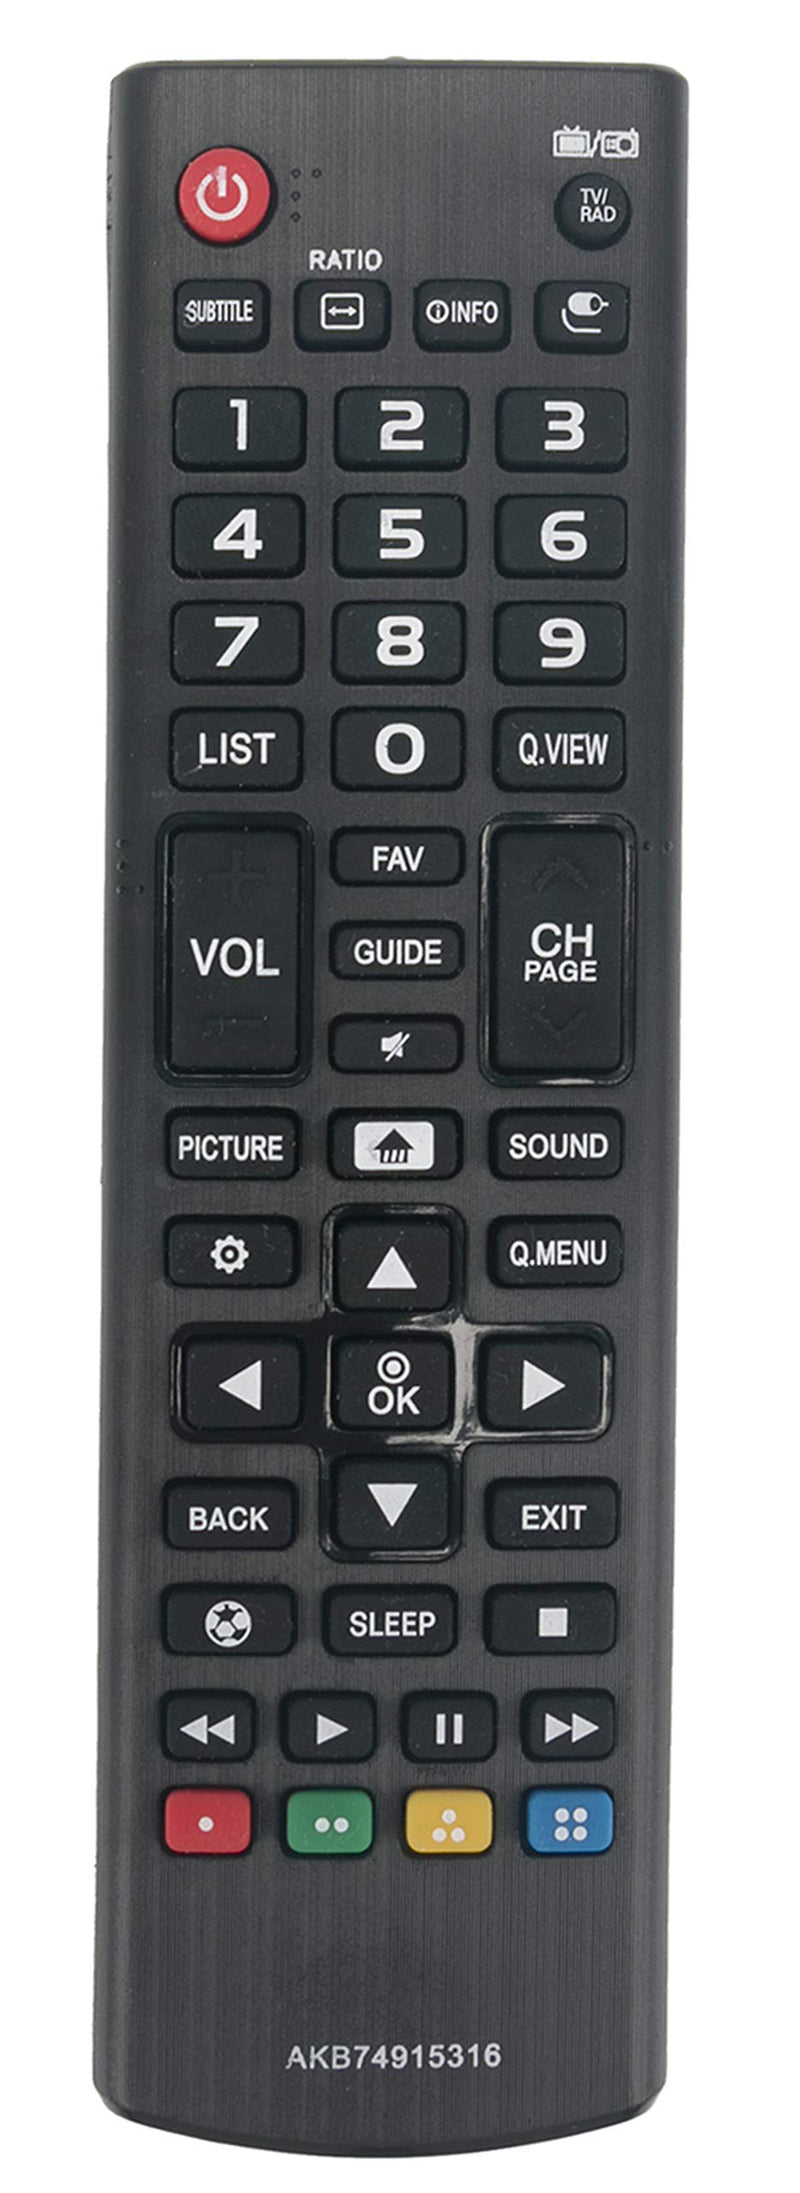 VINABTY AKB74915316 Replaced Remote fit for LG TV 49LH570A 49LH5700 55LH575A 55LH5750 43LH570A 43LH5700 50LH5730 32LH573b